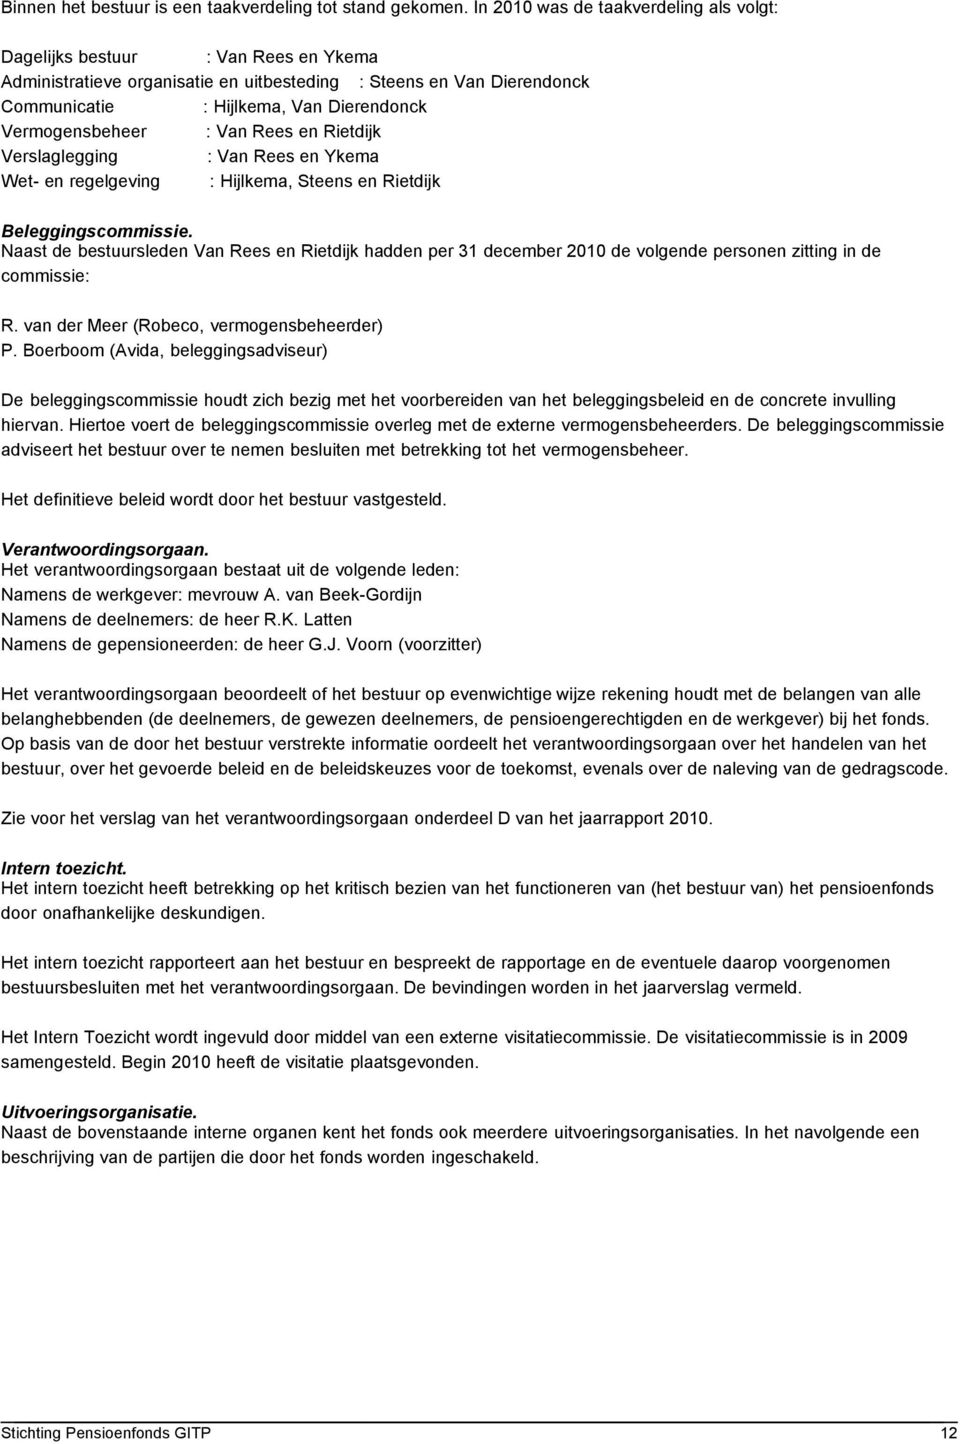 Vermogensbeheer : Van Rees en Rietdijk Verslaglegging : Van Rees en Ykema Wet- en regelgeving : Hijlkema, Steens en Rietdijk Beleggingscommissie.